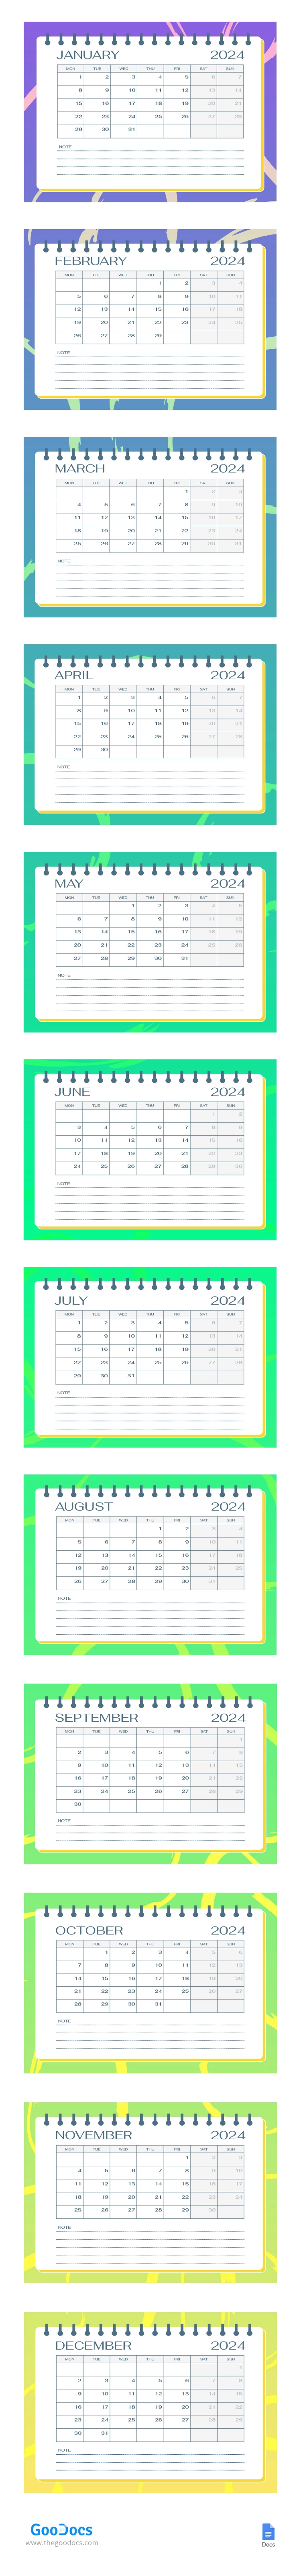 Brillante y colorido calendario escolar. - free Google Docs Template - 10067274